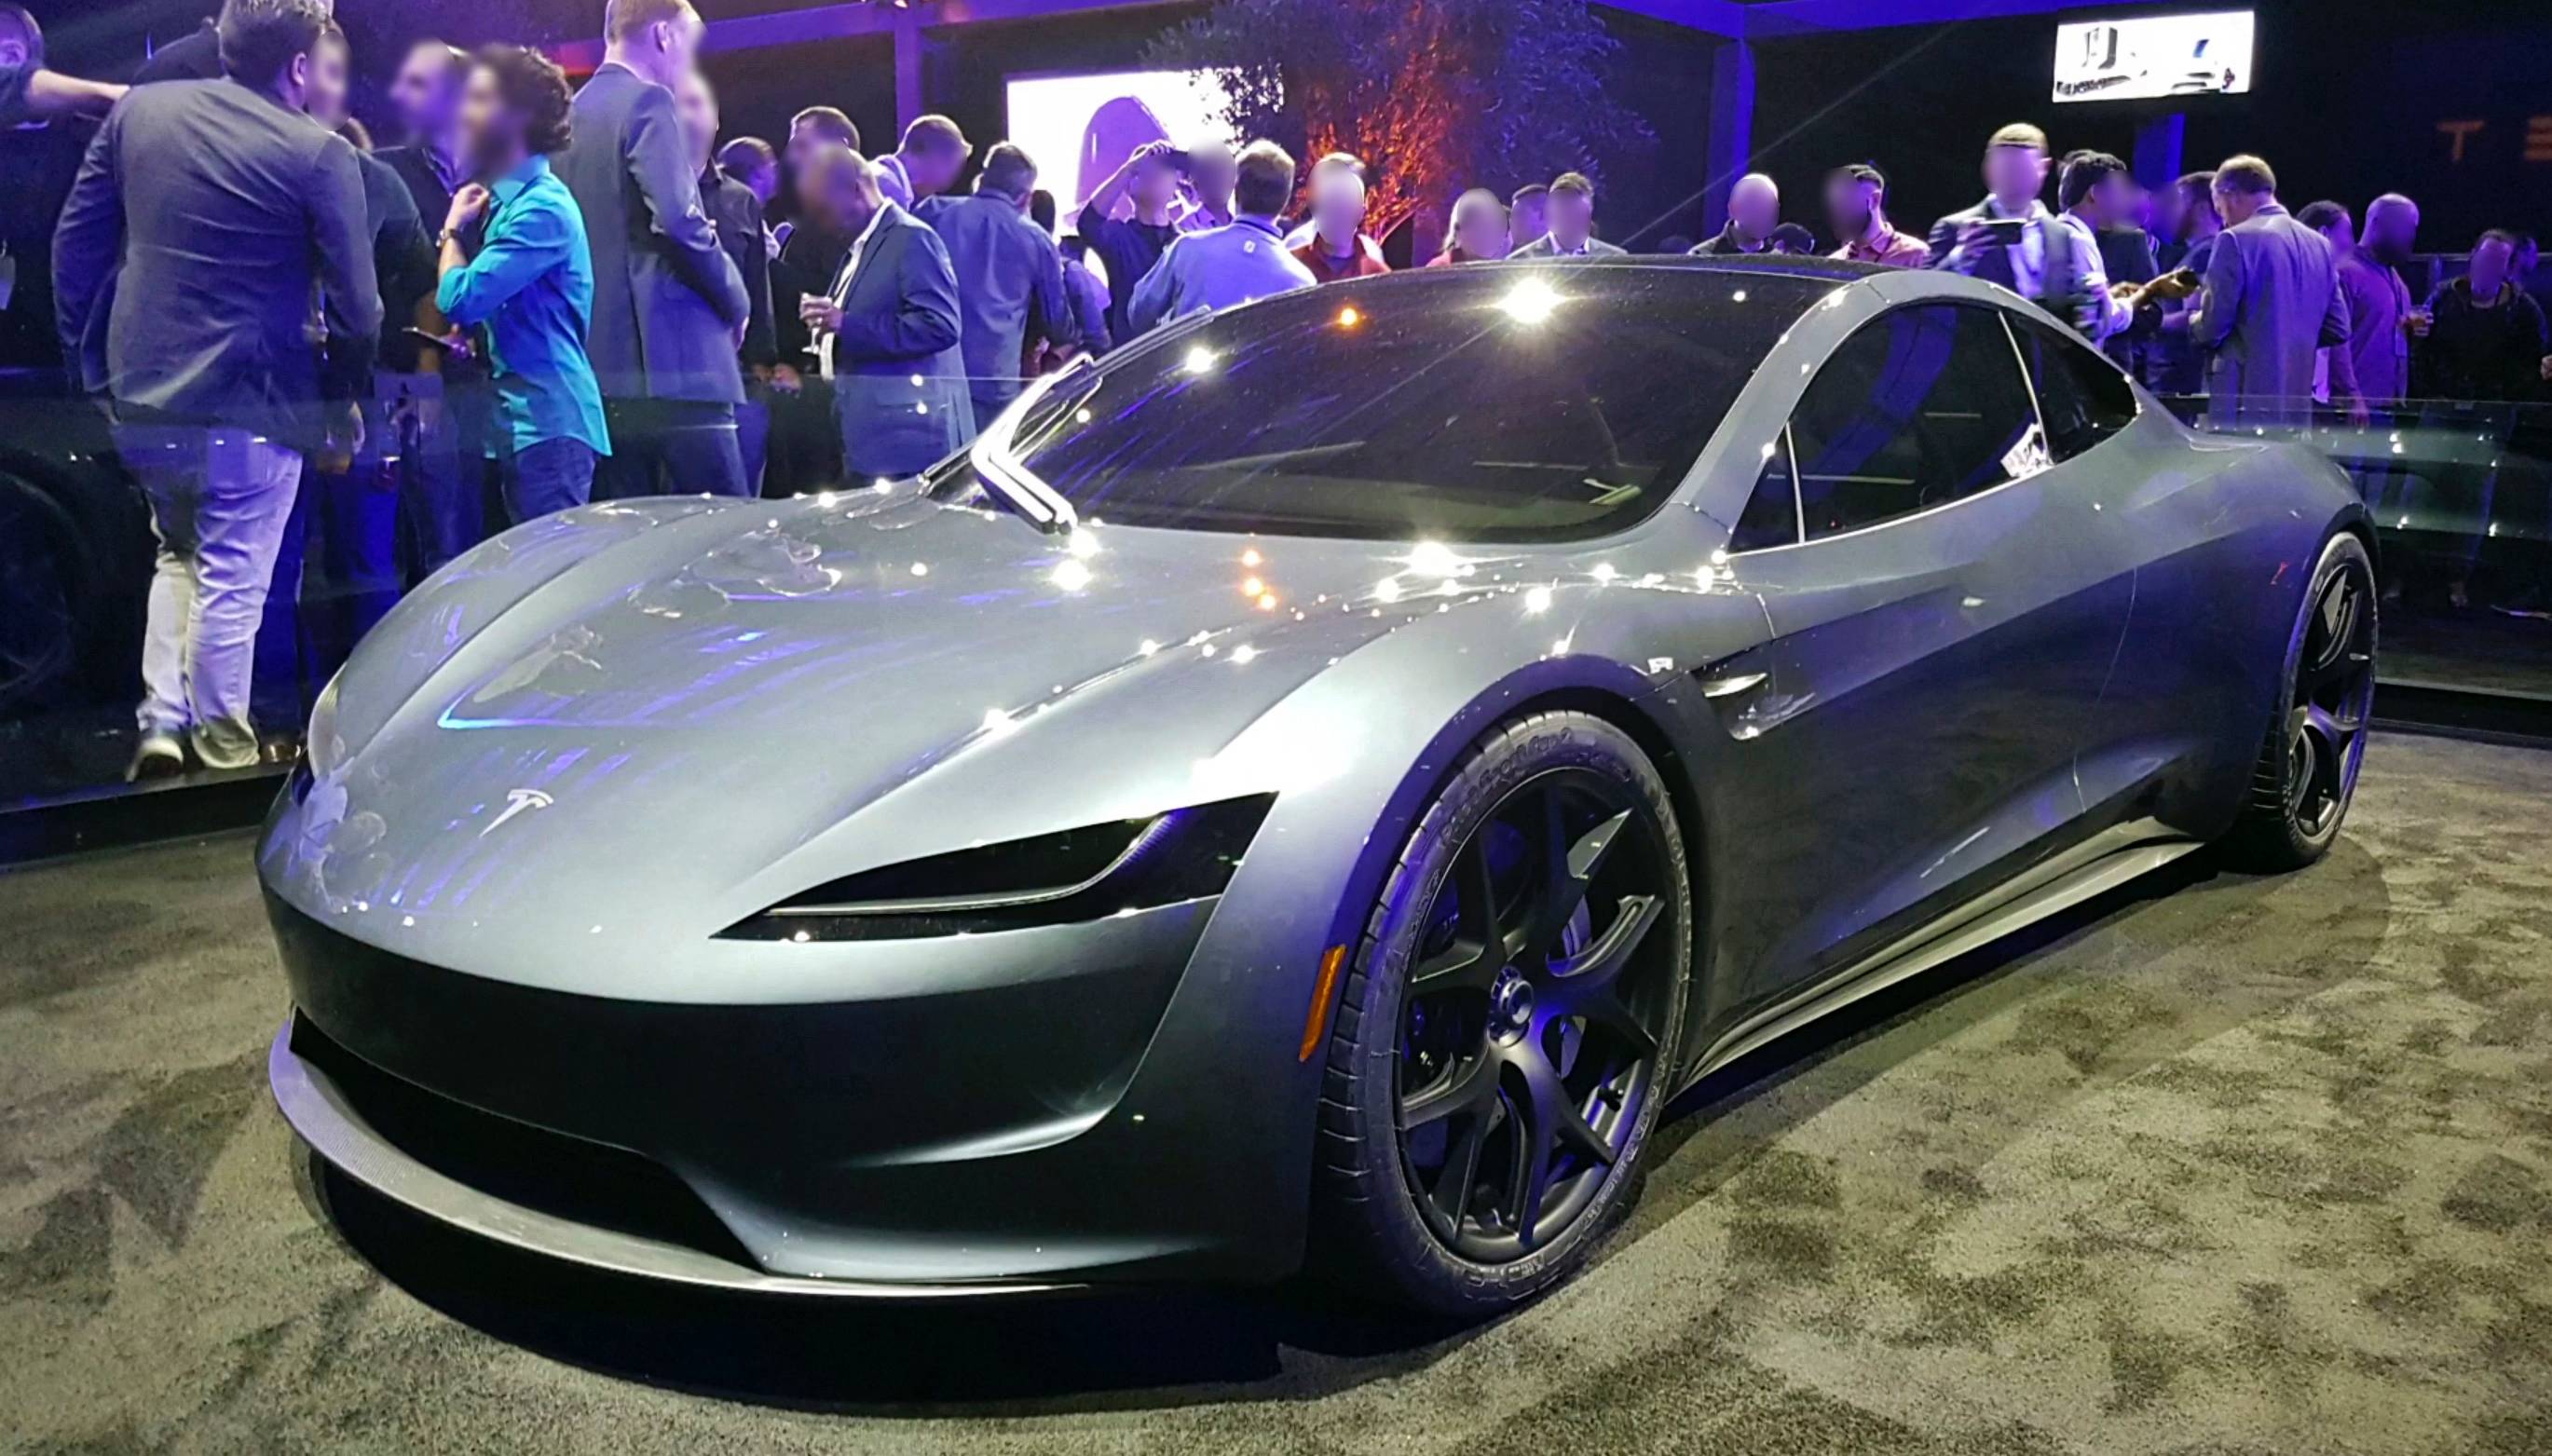 La Tesla Roadster est repoussée à 2021, mais battra tous les records